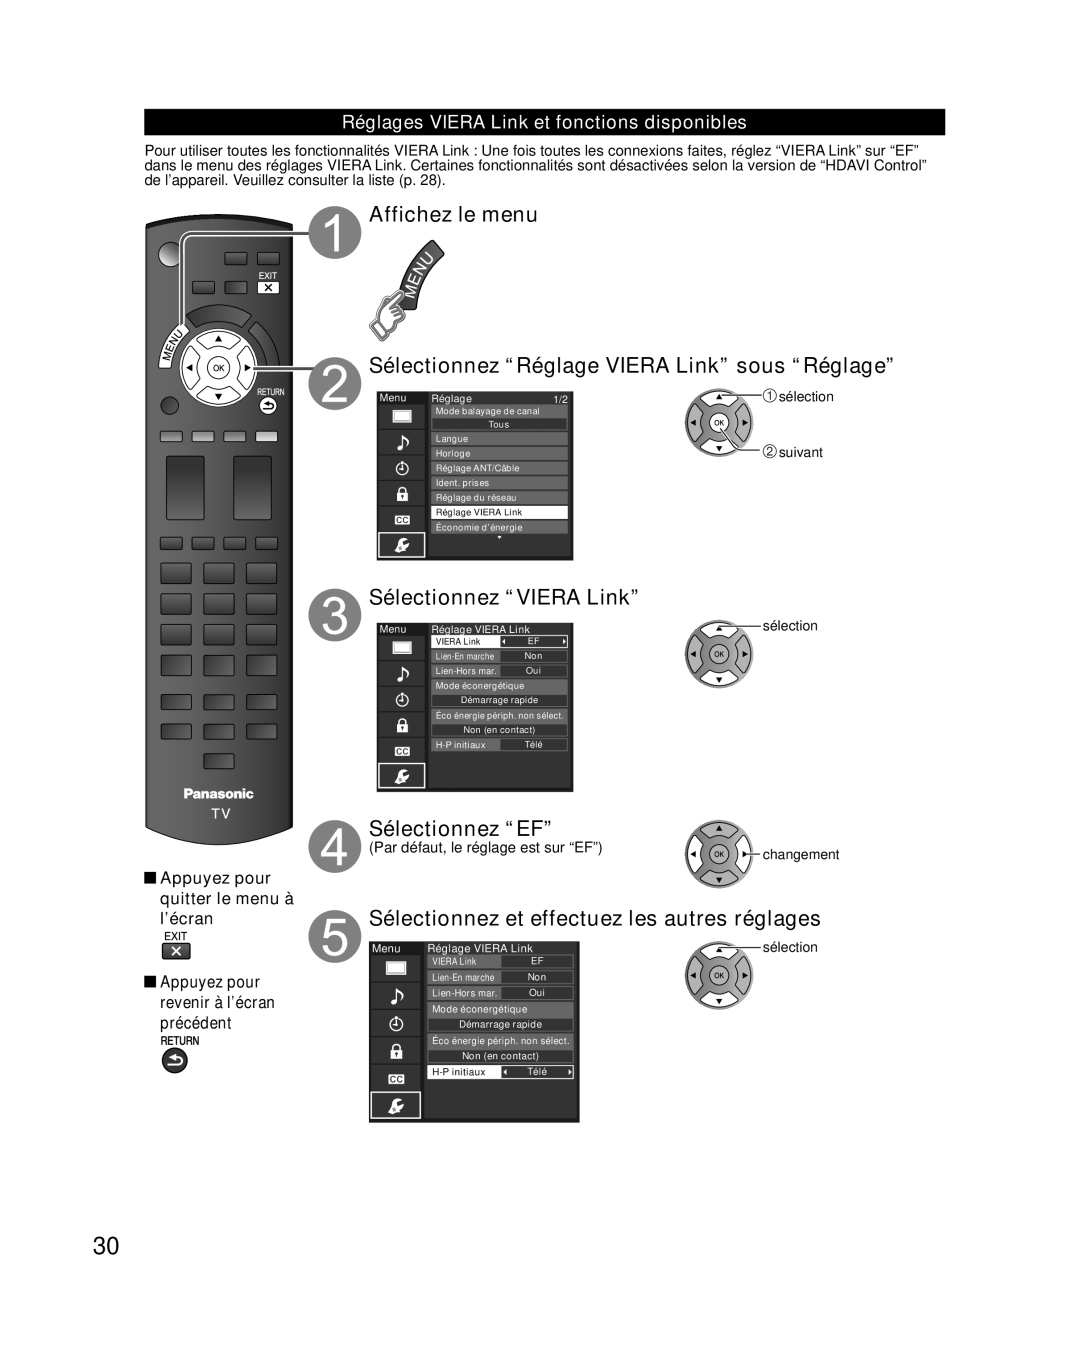 Panasonic TC-L32E3 Affichez le menu Sélectionnez “Réglage VIERA Link” sous “Réglage”, Sélectionnez “VIERA Link”, suivant 